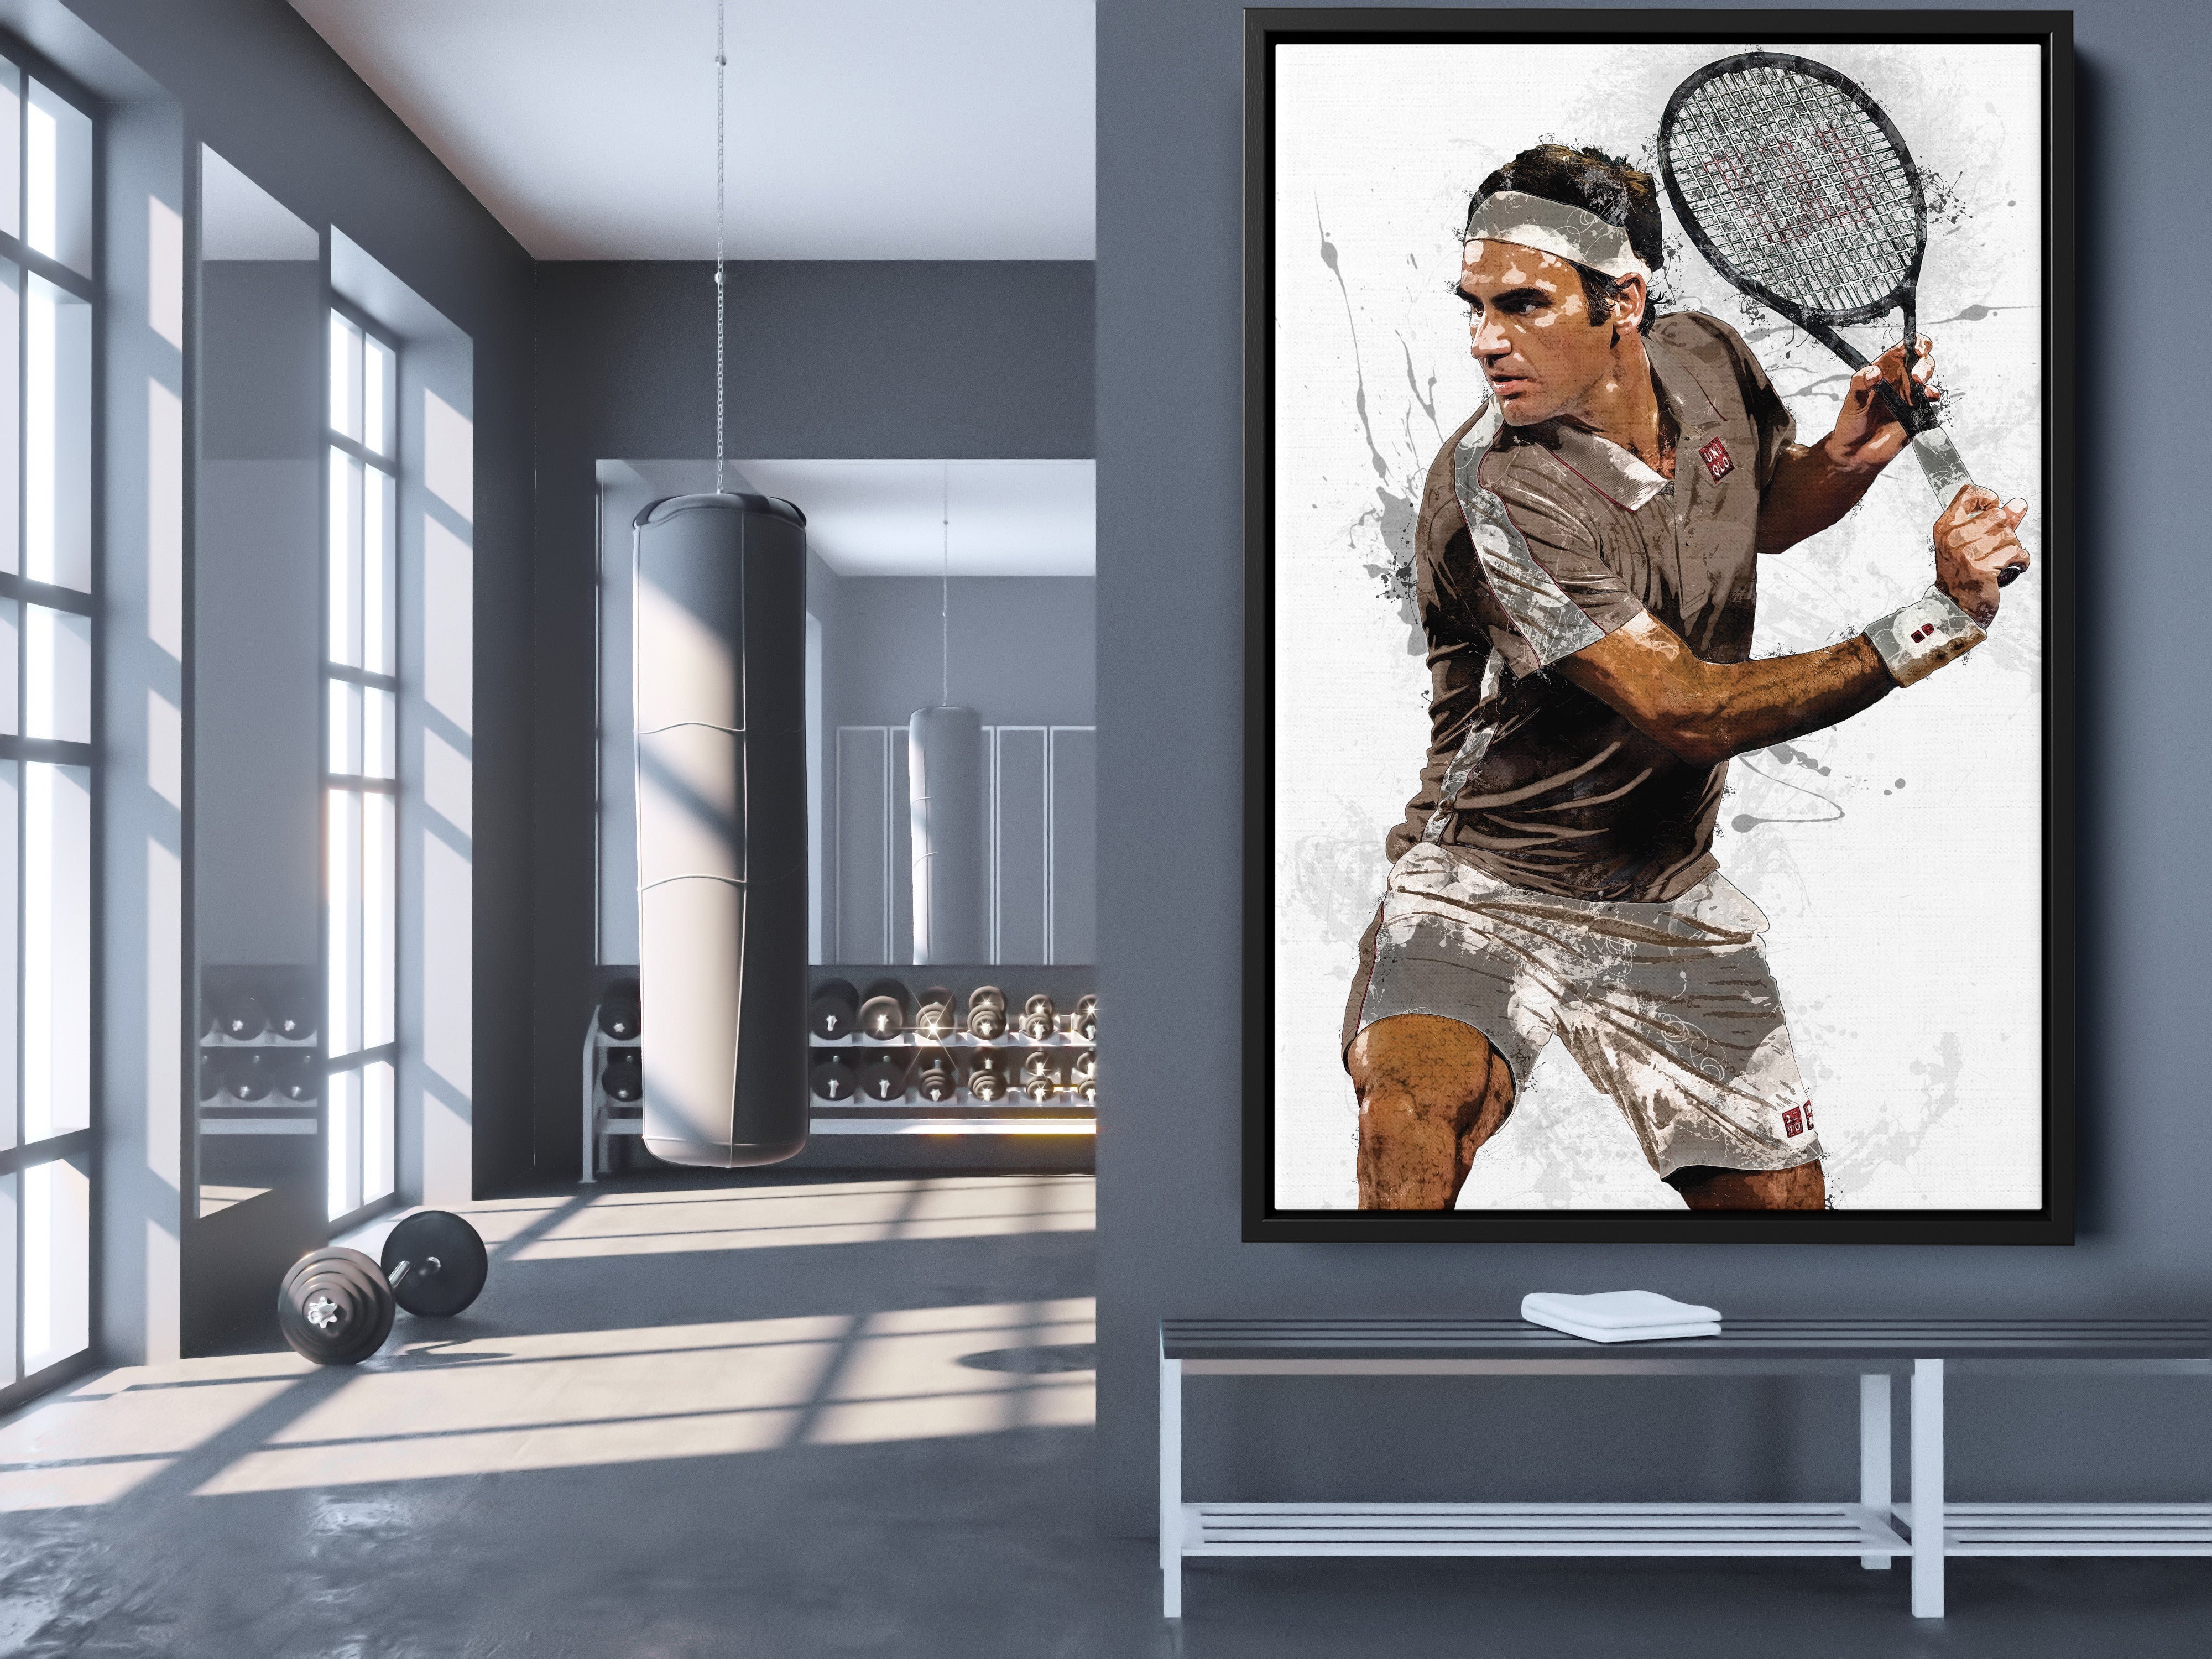 Tennis cool office wall art, tennis racket print canvas art 